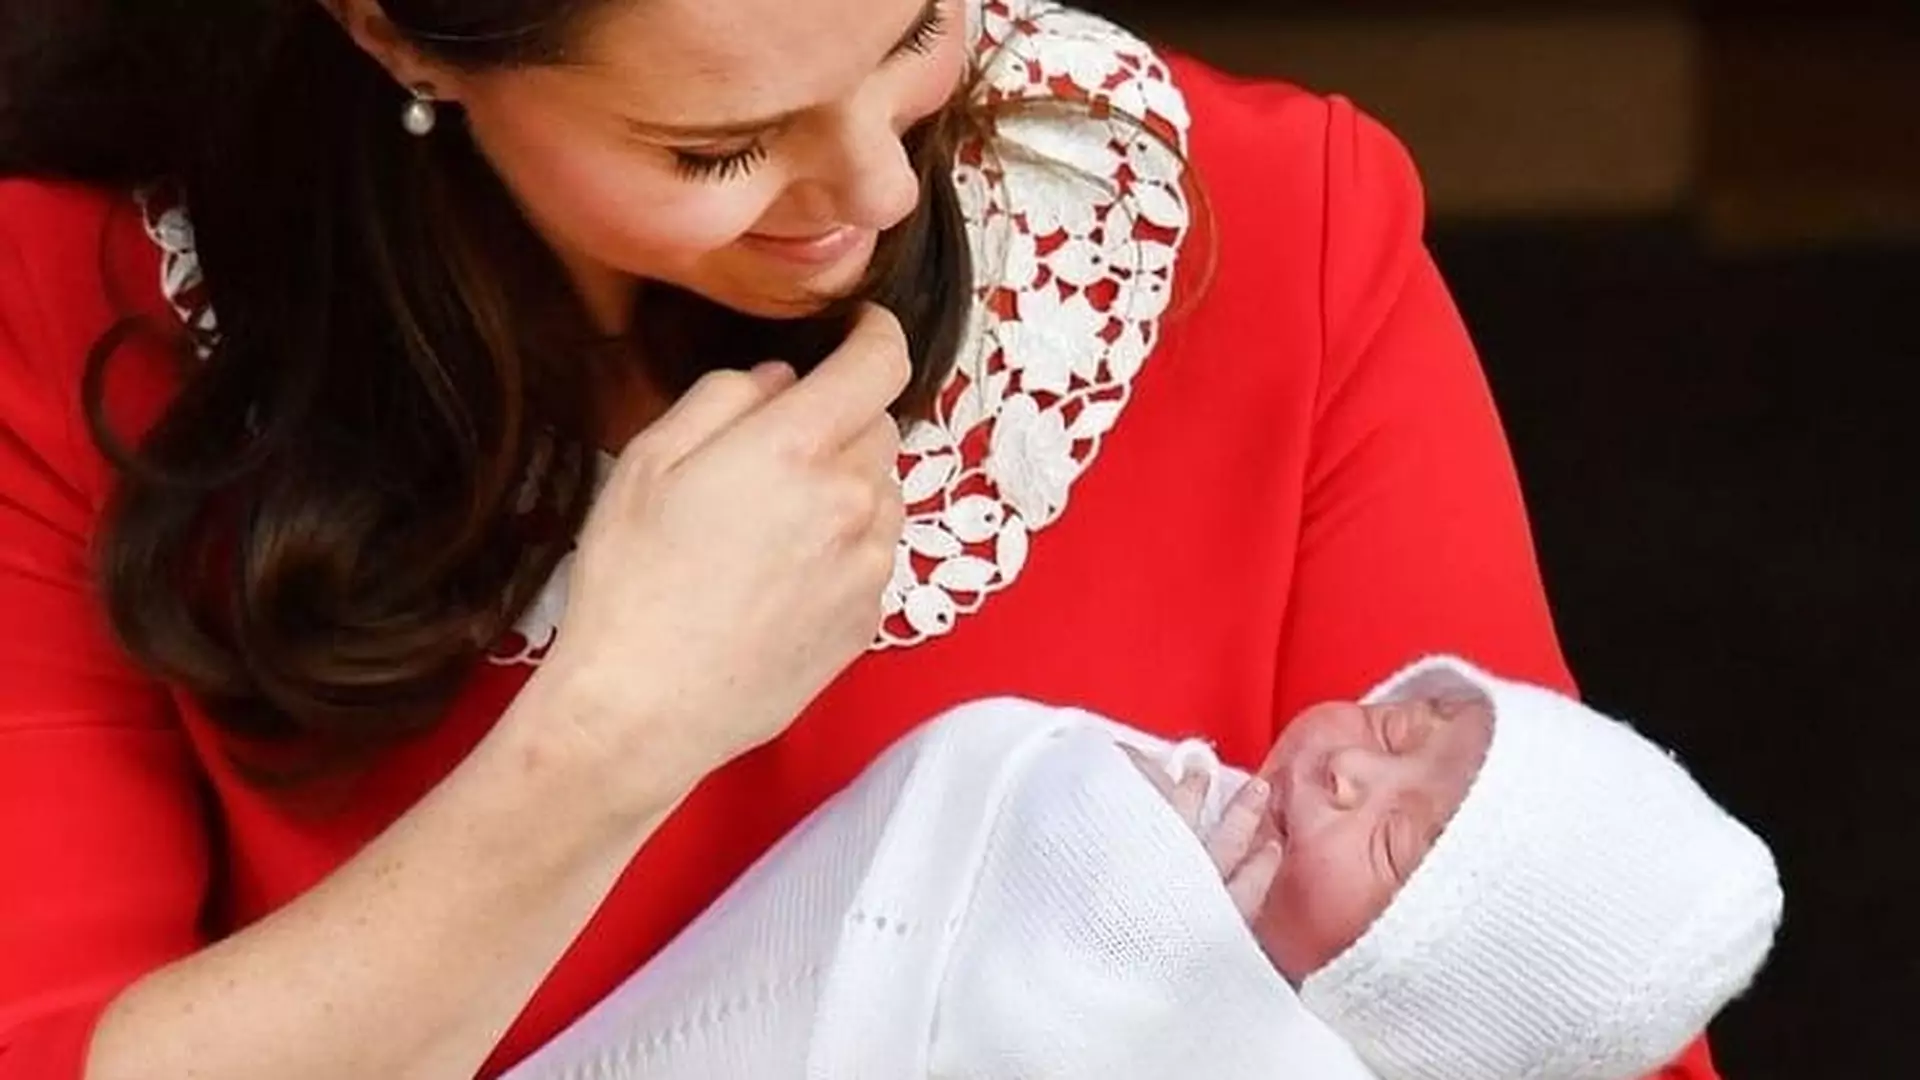 Teraz, kiedy Royal Baby jest już na świecie, czekamy na imię dziecka. Czy rzeczywiście będzie Arthur?